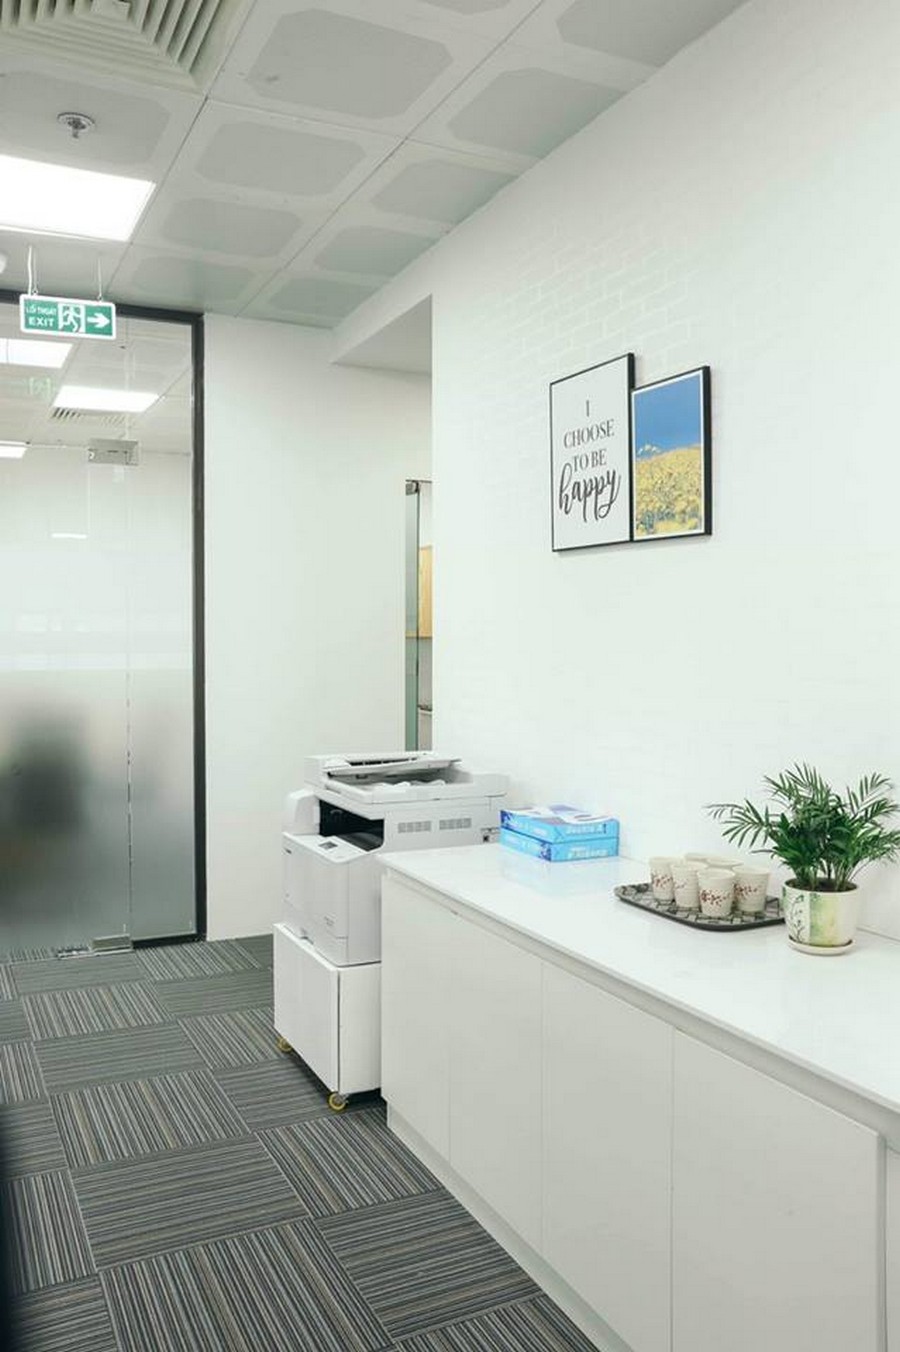 Văn phòng ảo cho thuê tại Hà Nội – Lựa chọn đáng tin cậy cho các doanh nghiệp > van-phong-ao-cho-thue-tai-ha-noi05